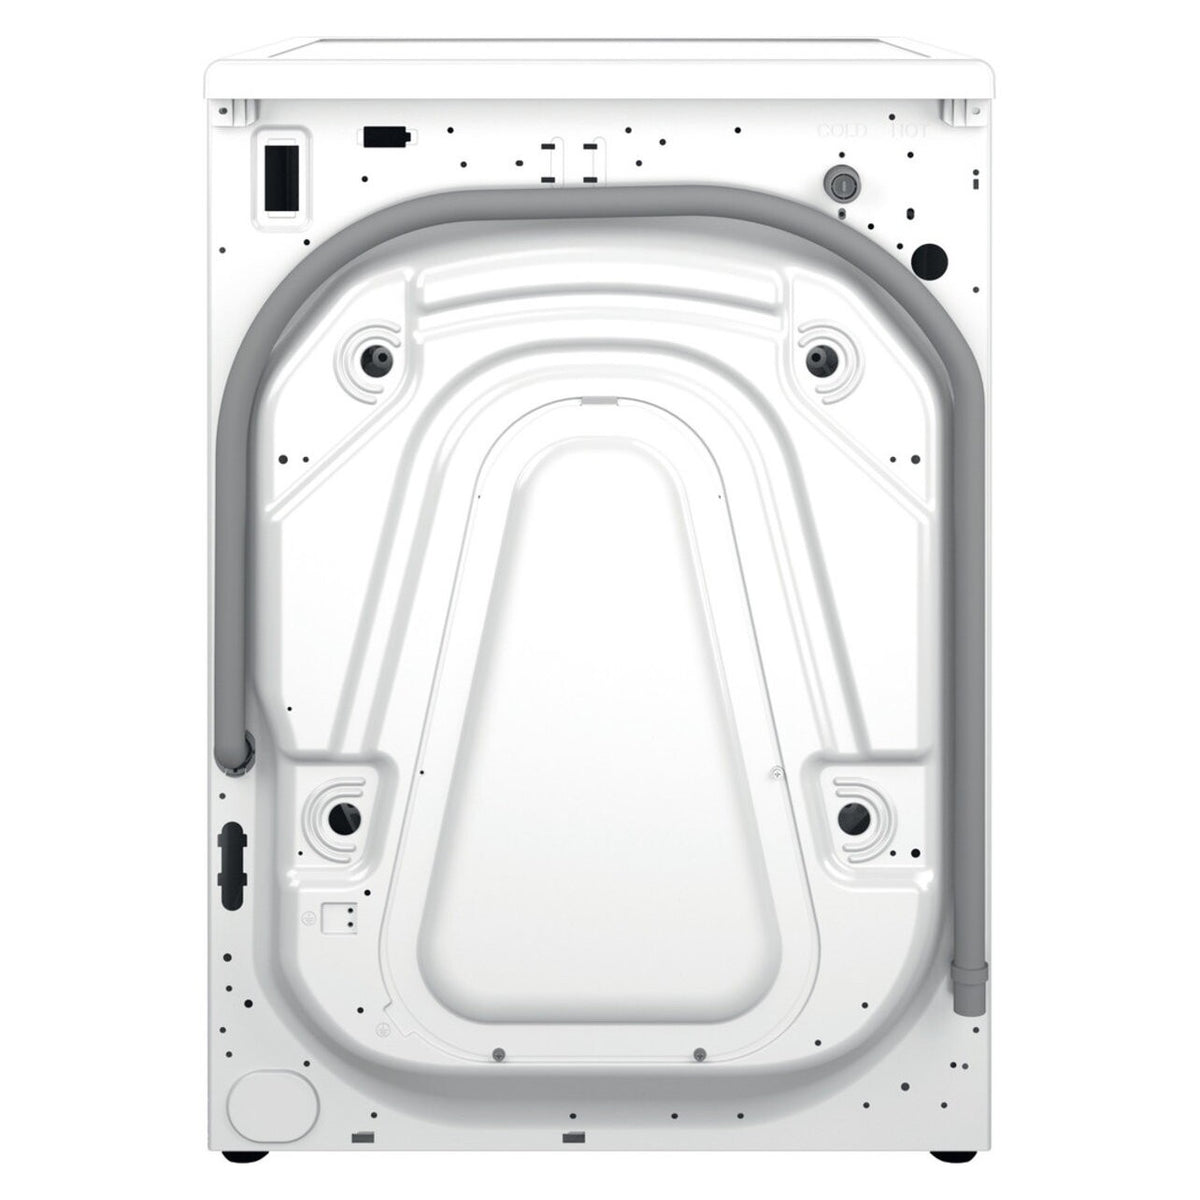 Pračka s předním plněním Whirlpool W6X W845WB EE, B, 8kg